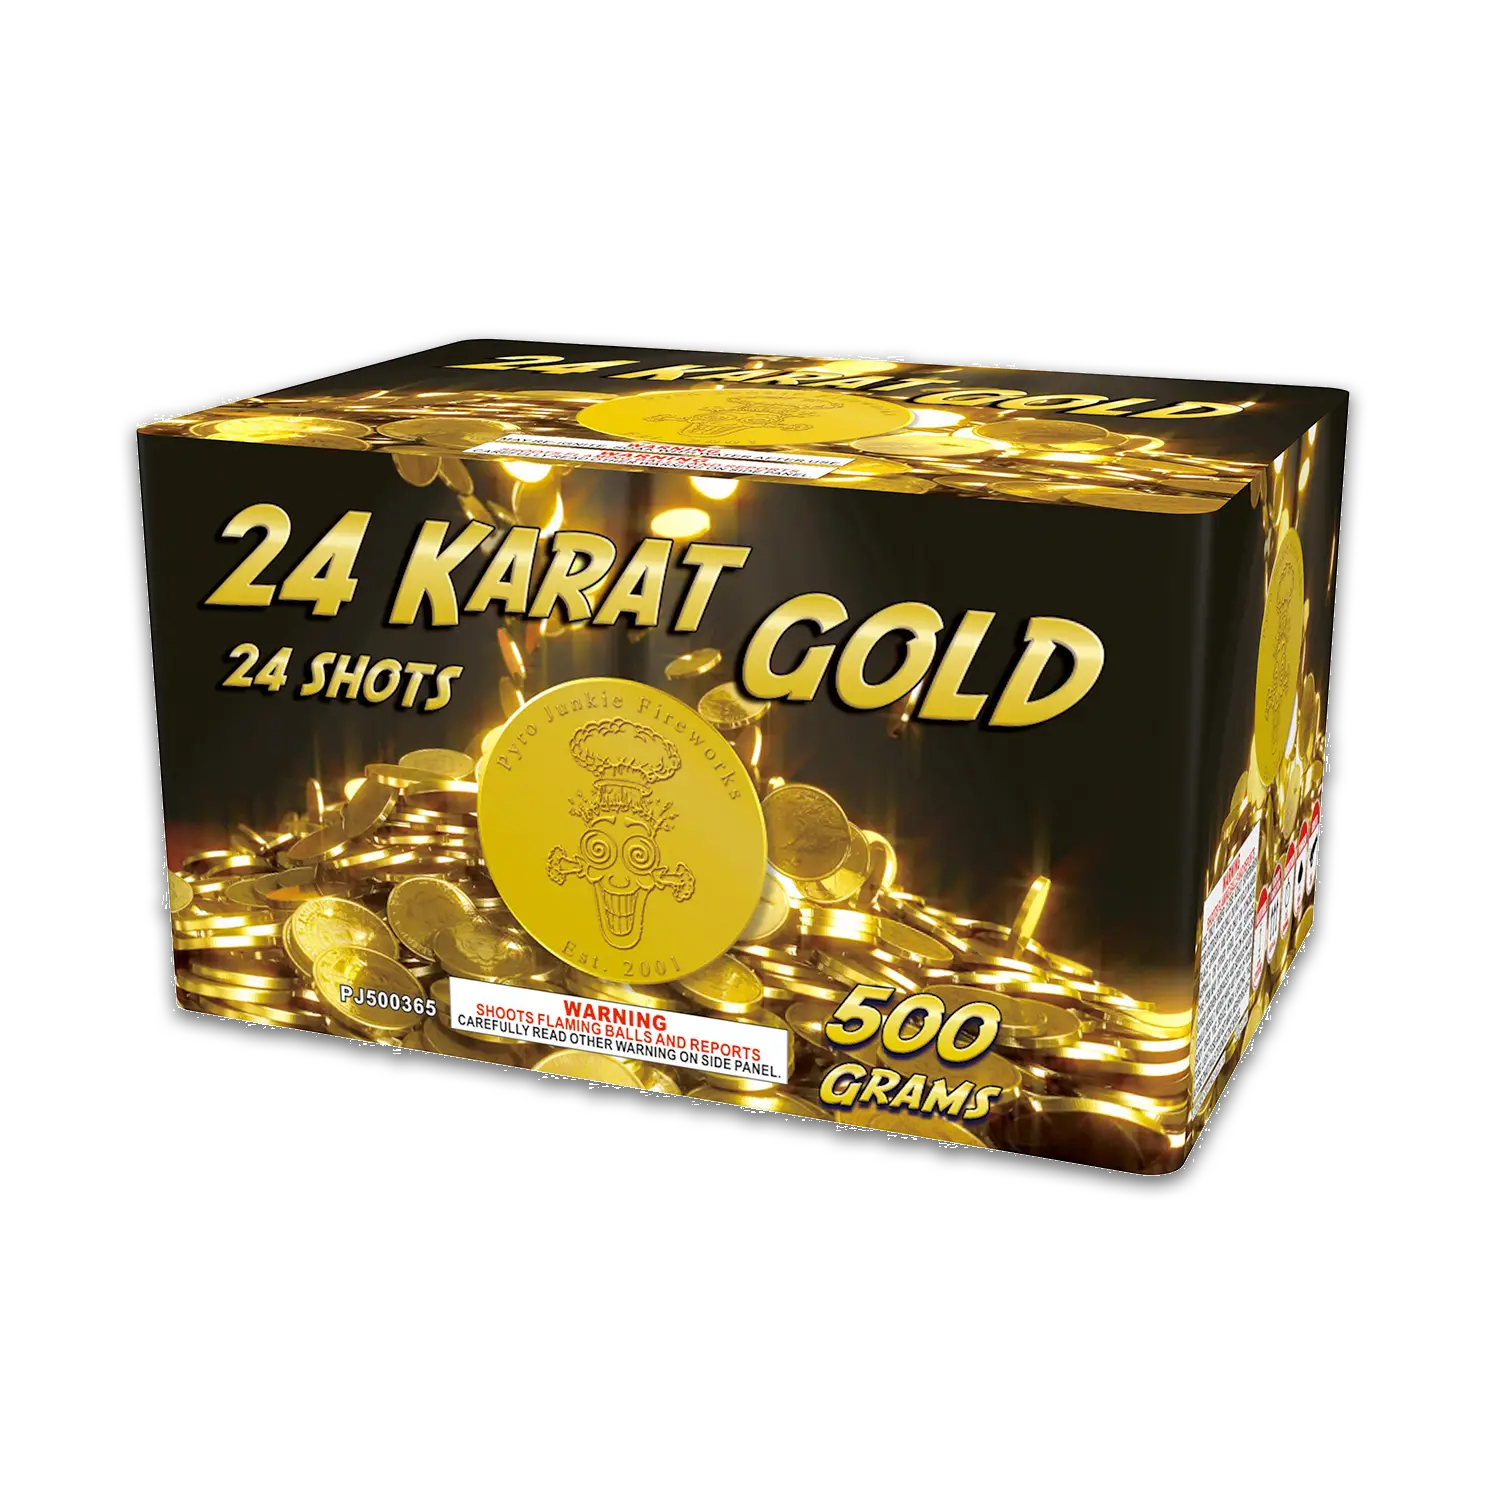 24 KARAT GOLD